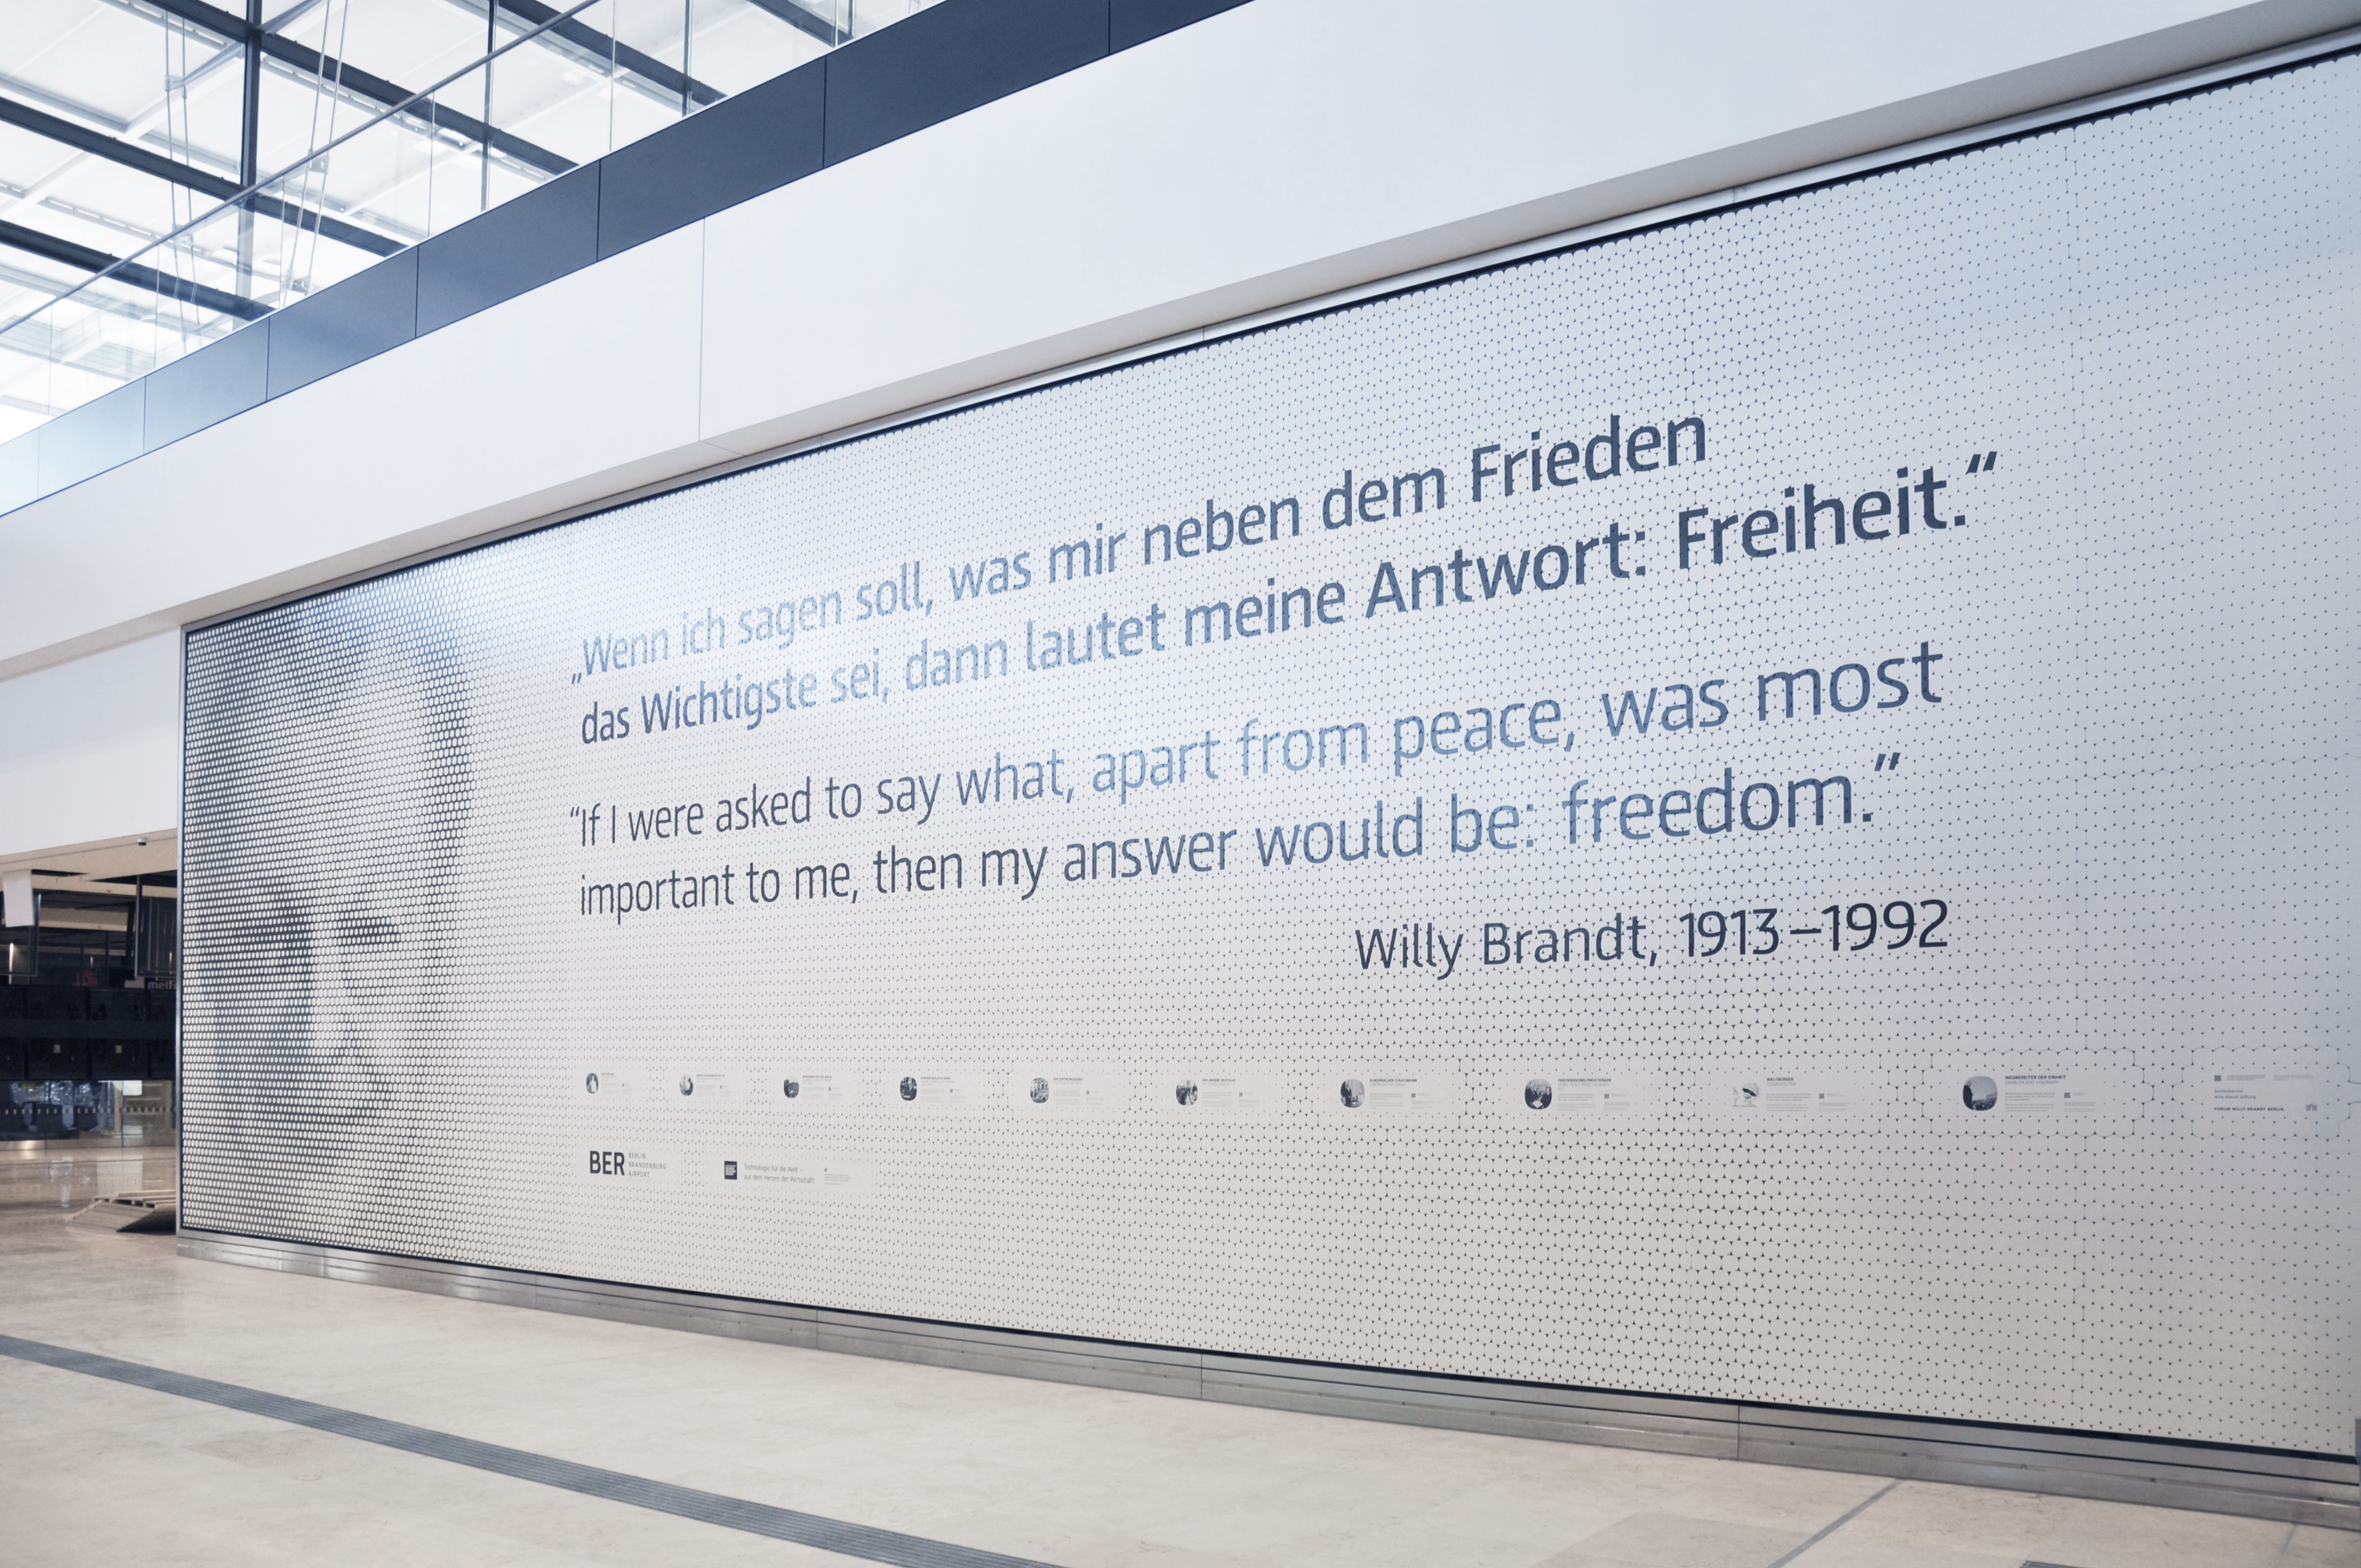 Symbol der Freiheit: Mit einem Zitat von Willy Brandt werden die Gäste künftig am Flughafen in Berlin begrüßt.